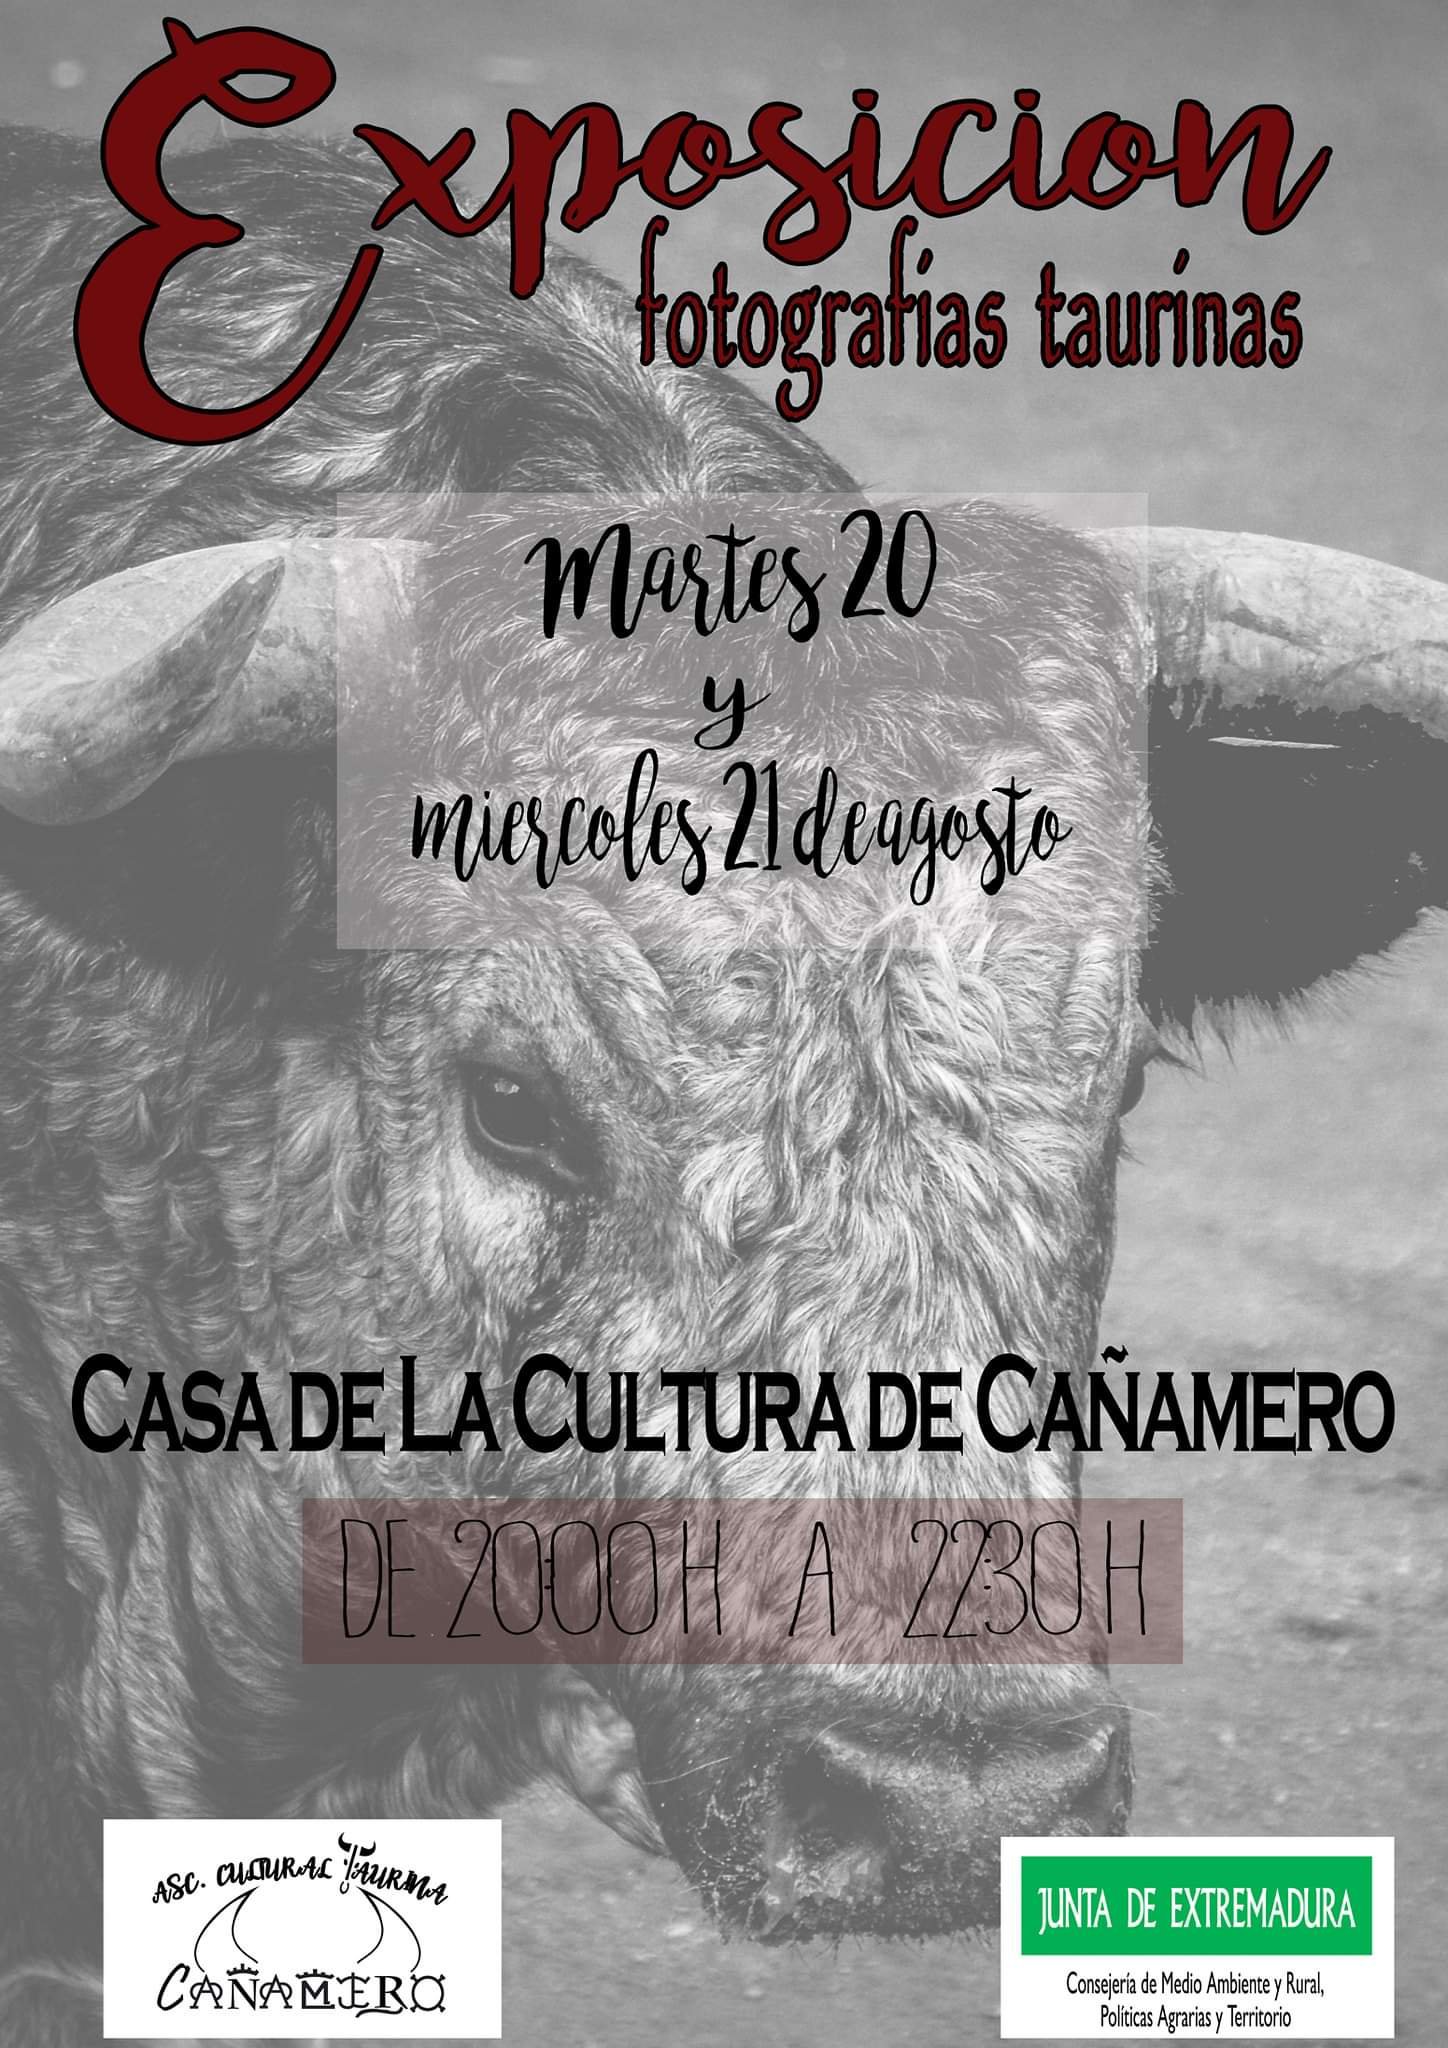 Exposición de fotografías taurinas 2019 - Cañamero (Cáceres)